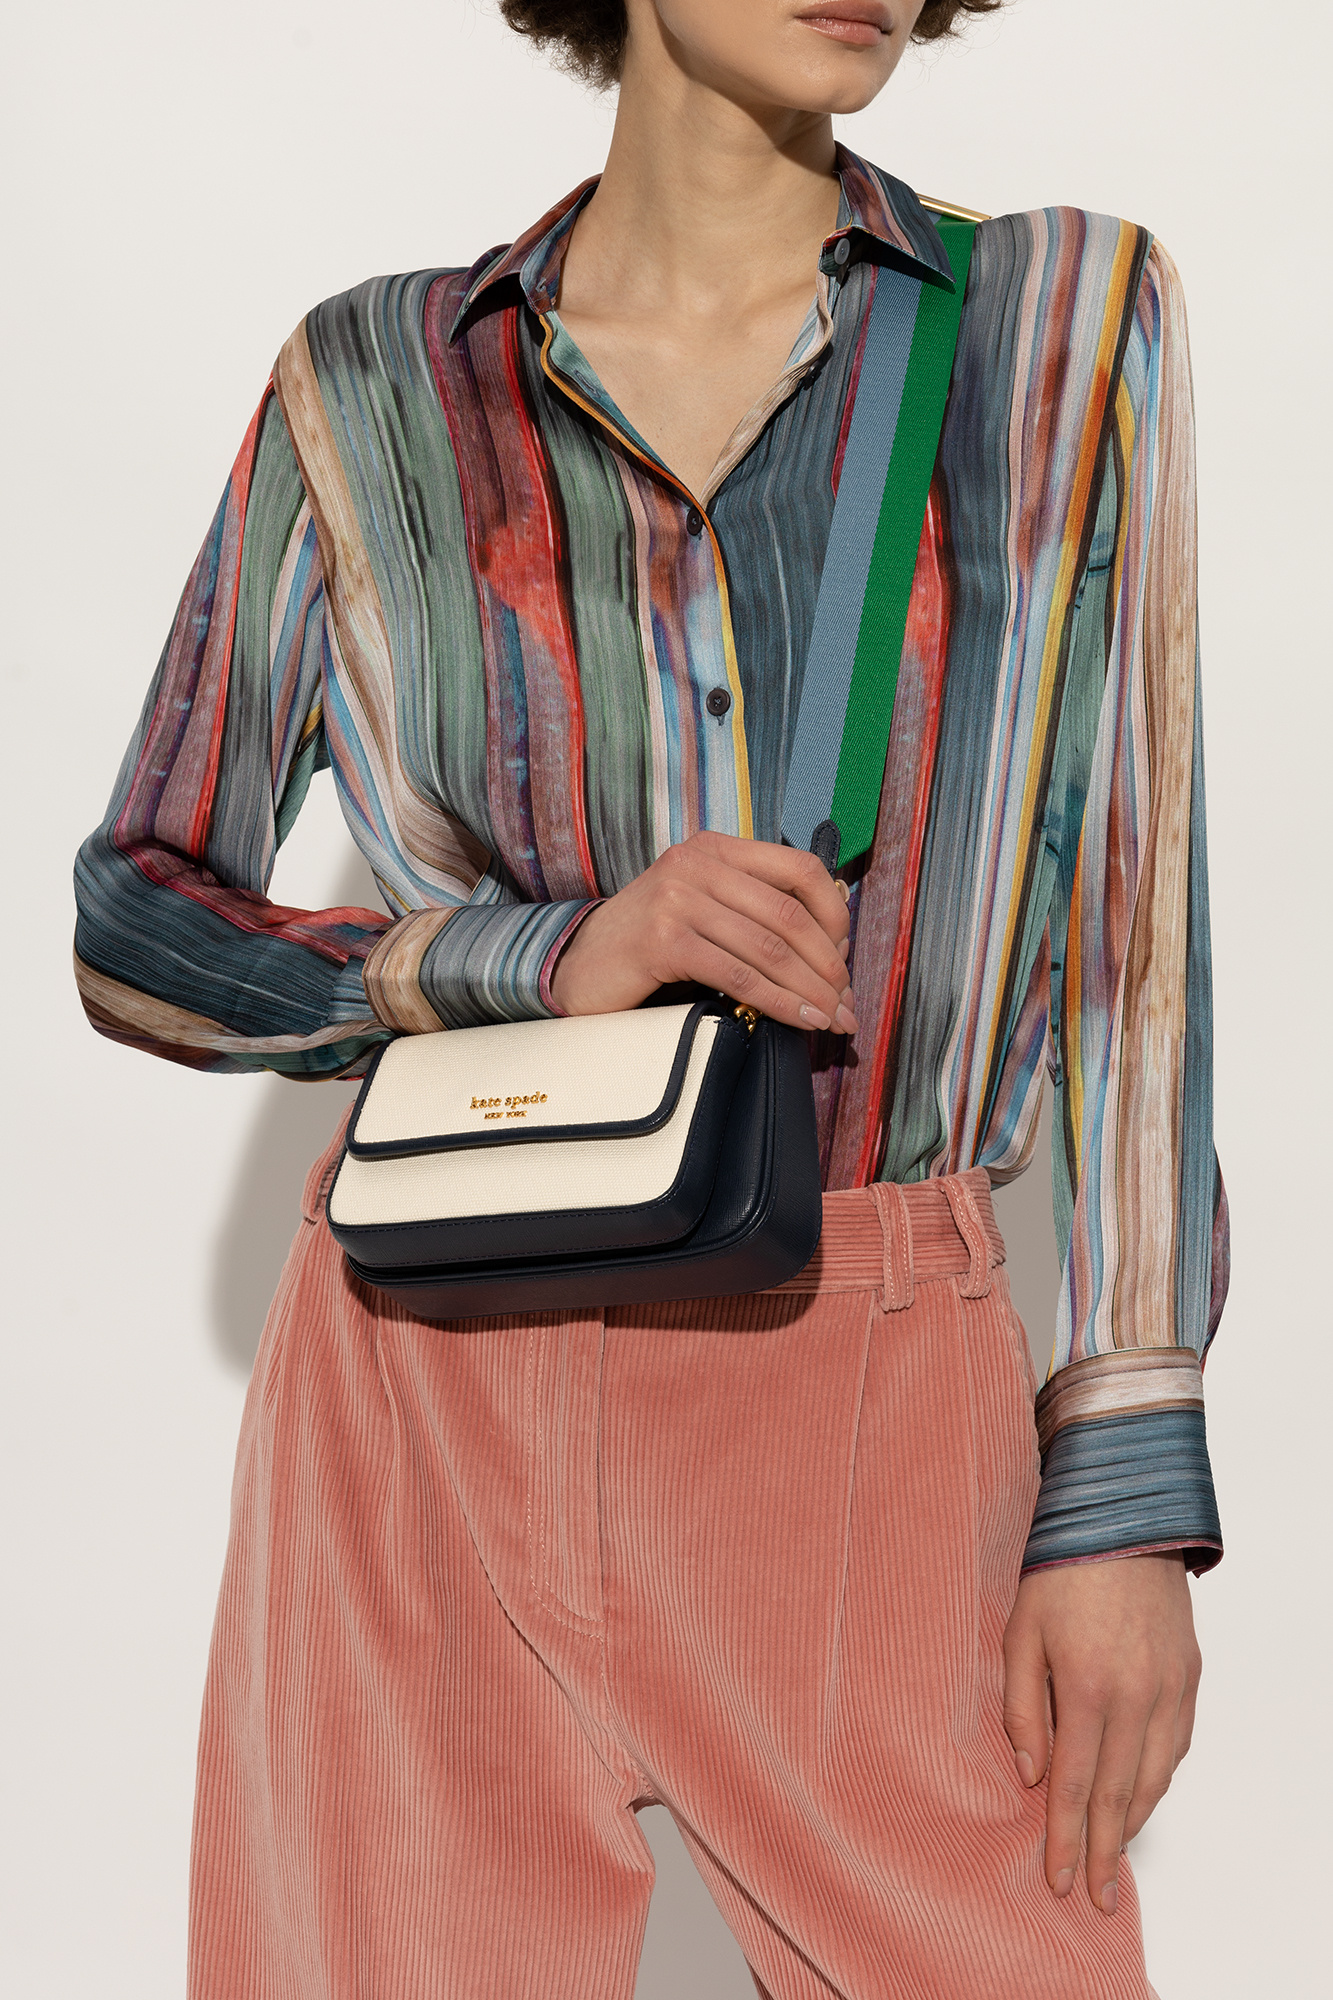 Kate Spade 'Morgan' shoulder bag, Women's Bags